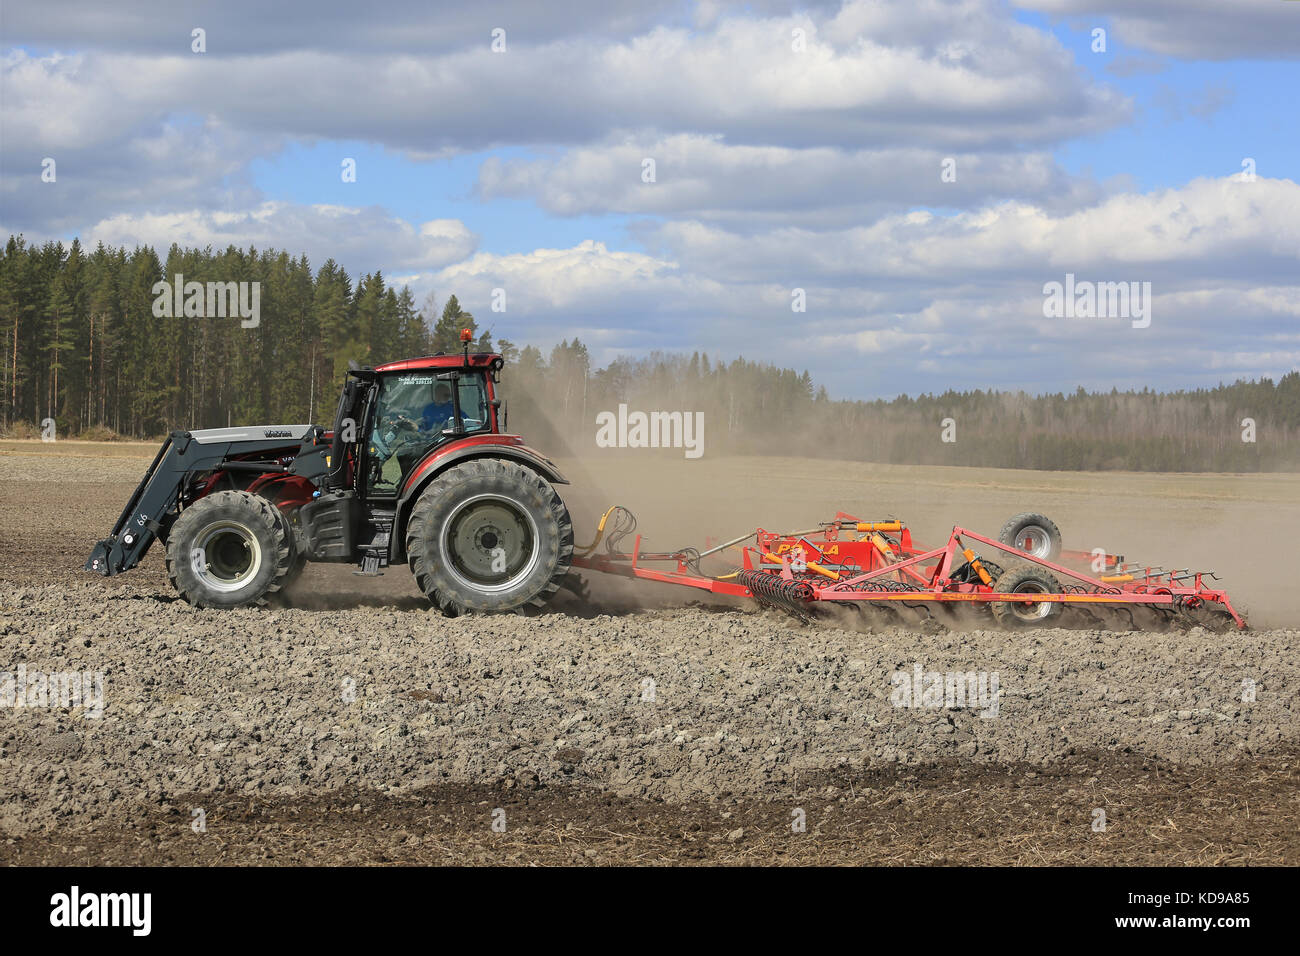 SALO, FINNLAND - 7. MAI 2017: Landwirt bewirtschaftet an einem schönen Frühlingstag Feld mit rotem Valtra-Traktor und Potila-Saatbettzüchter. Stockfoto